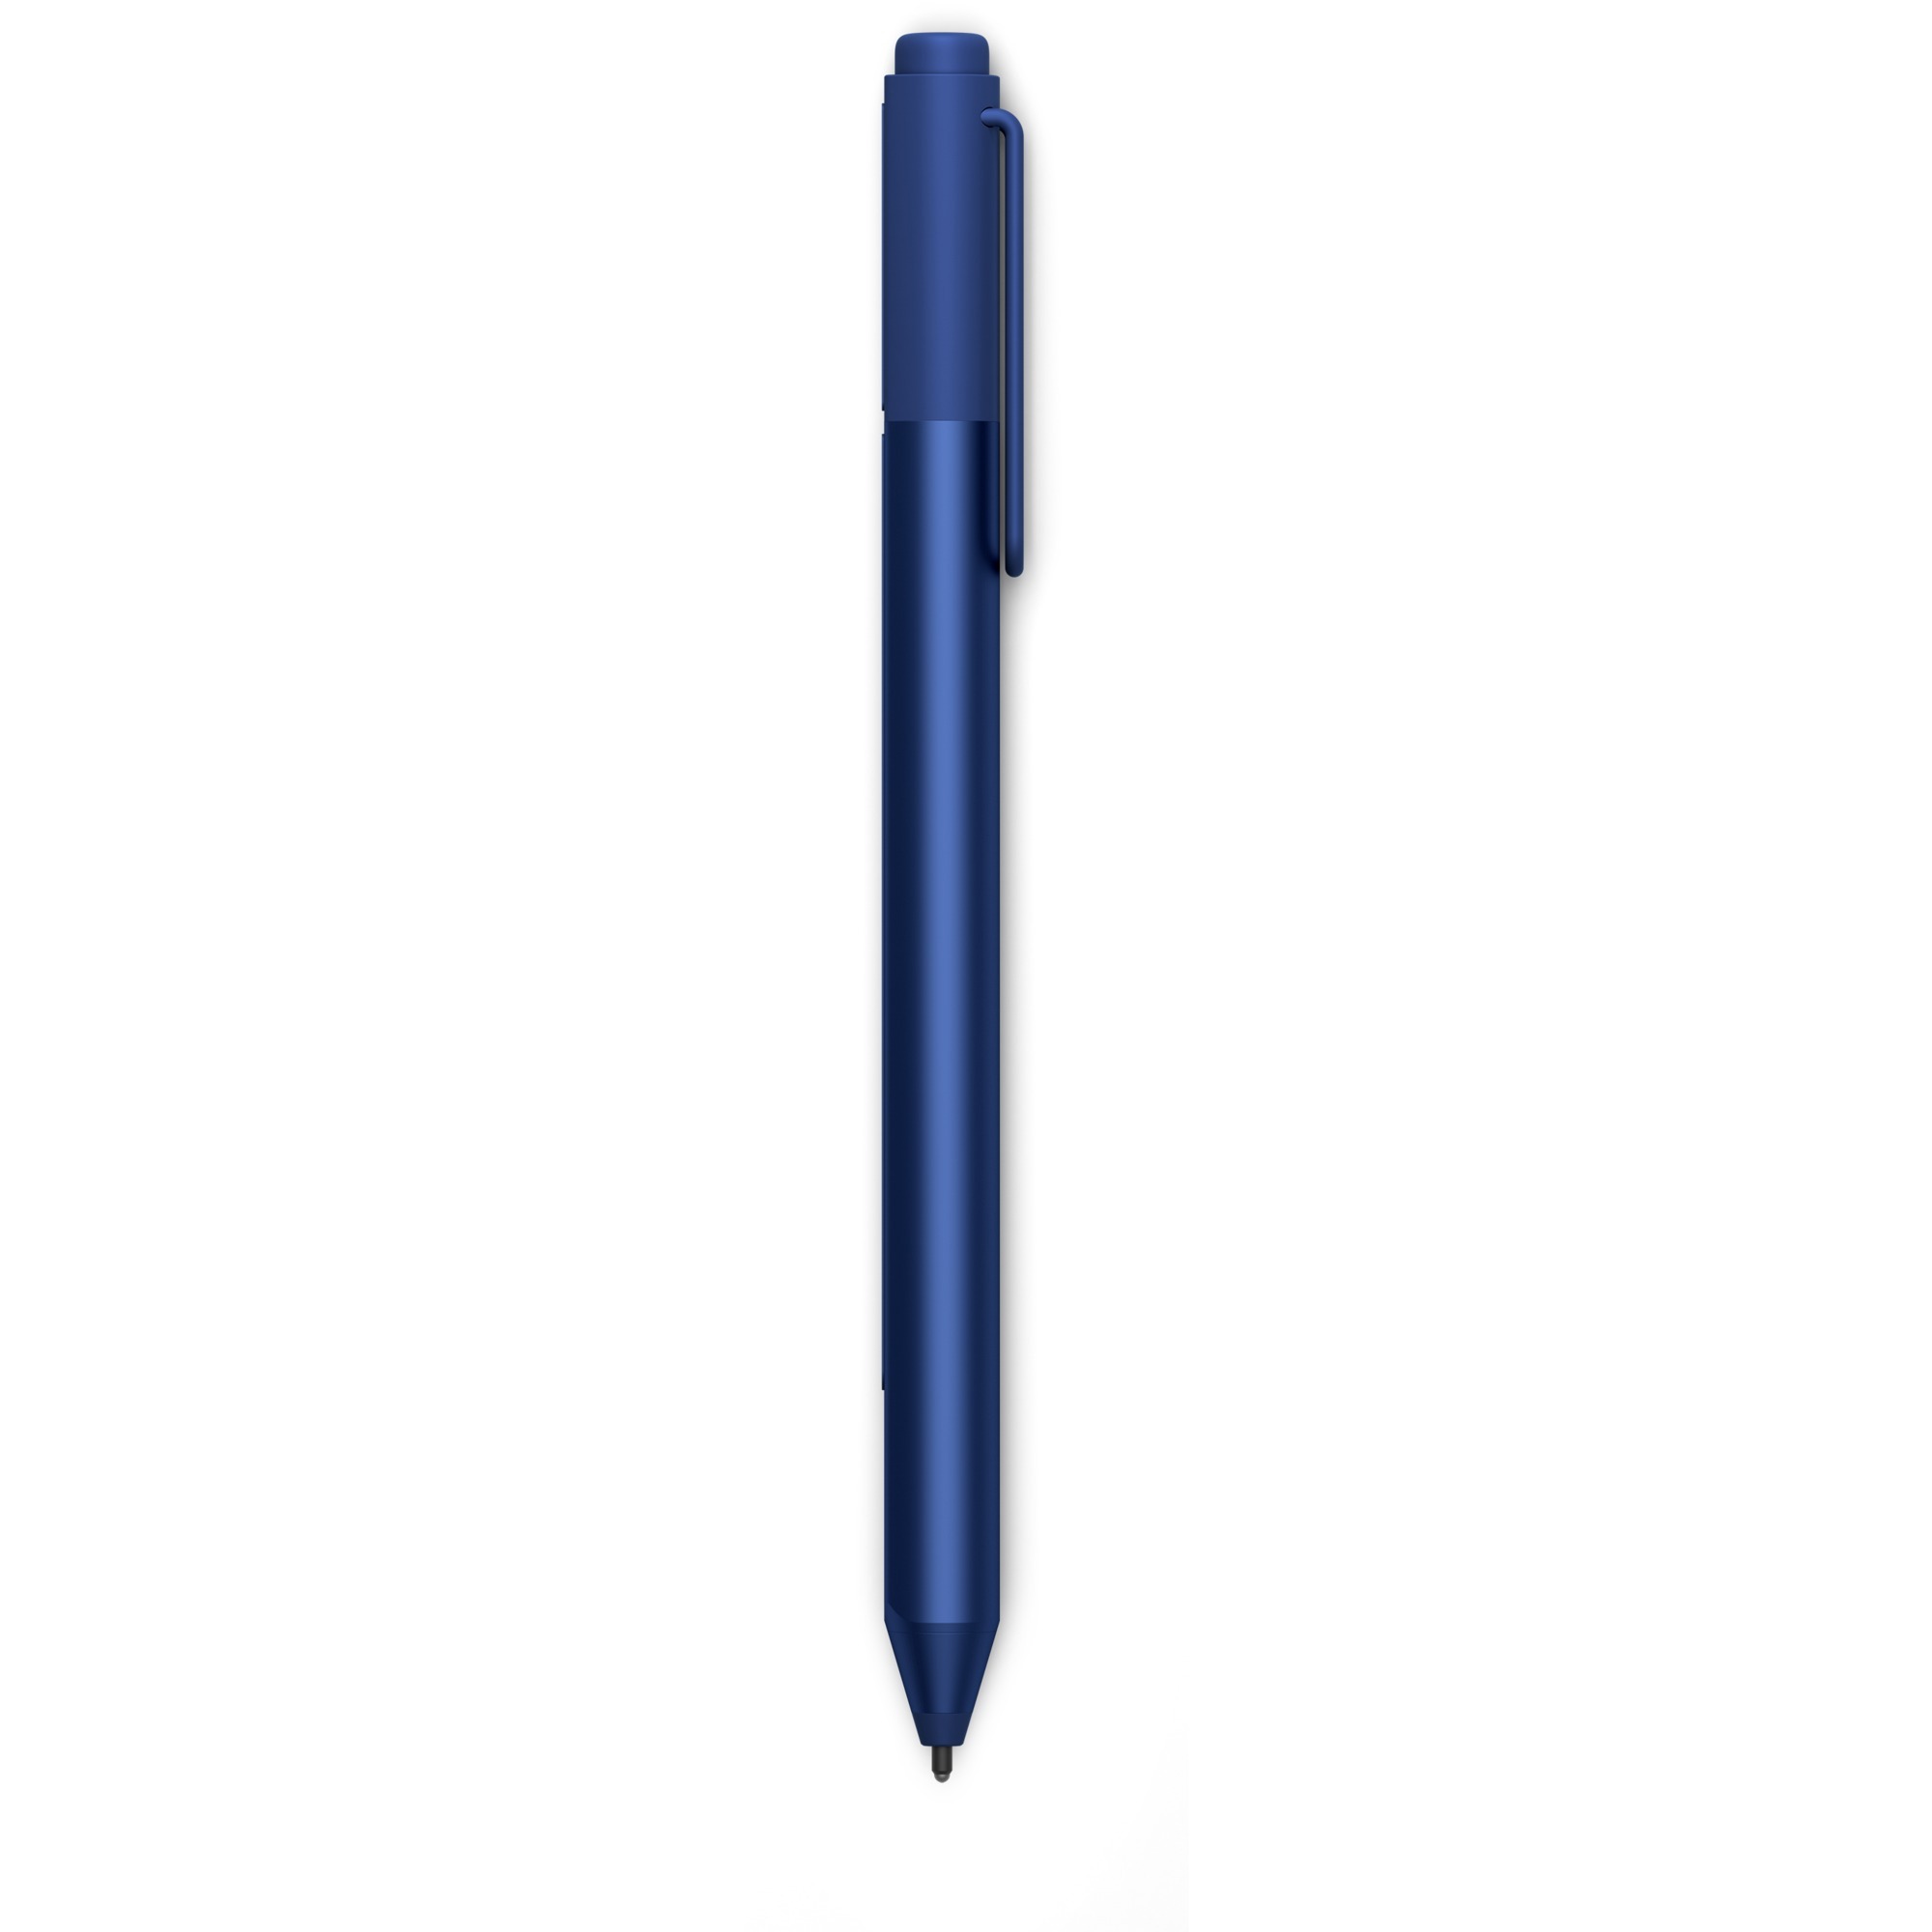 Surface Pen rysik do PDA Barwa morska 20 g